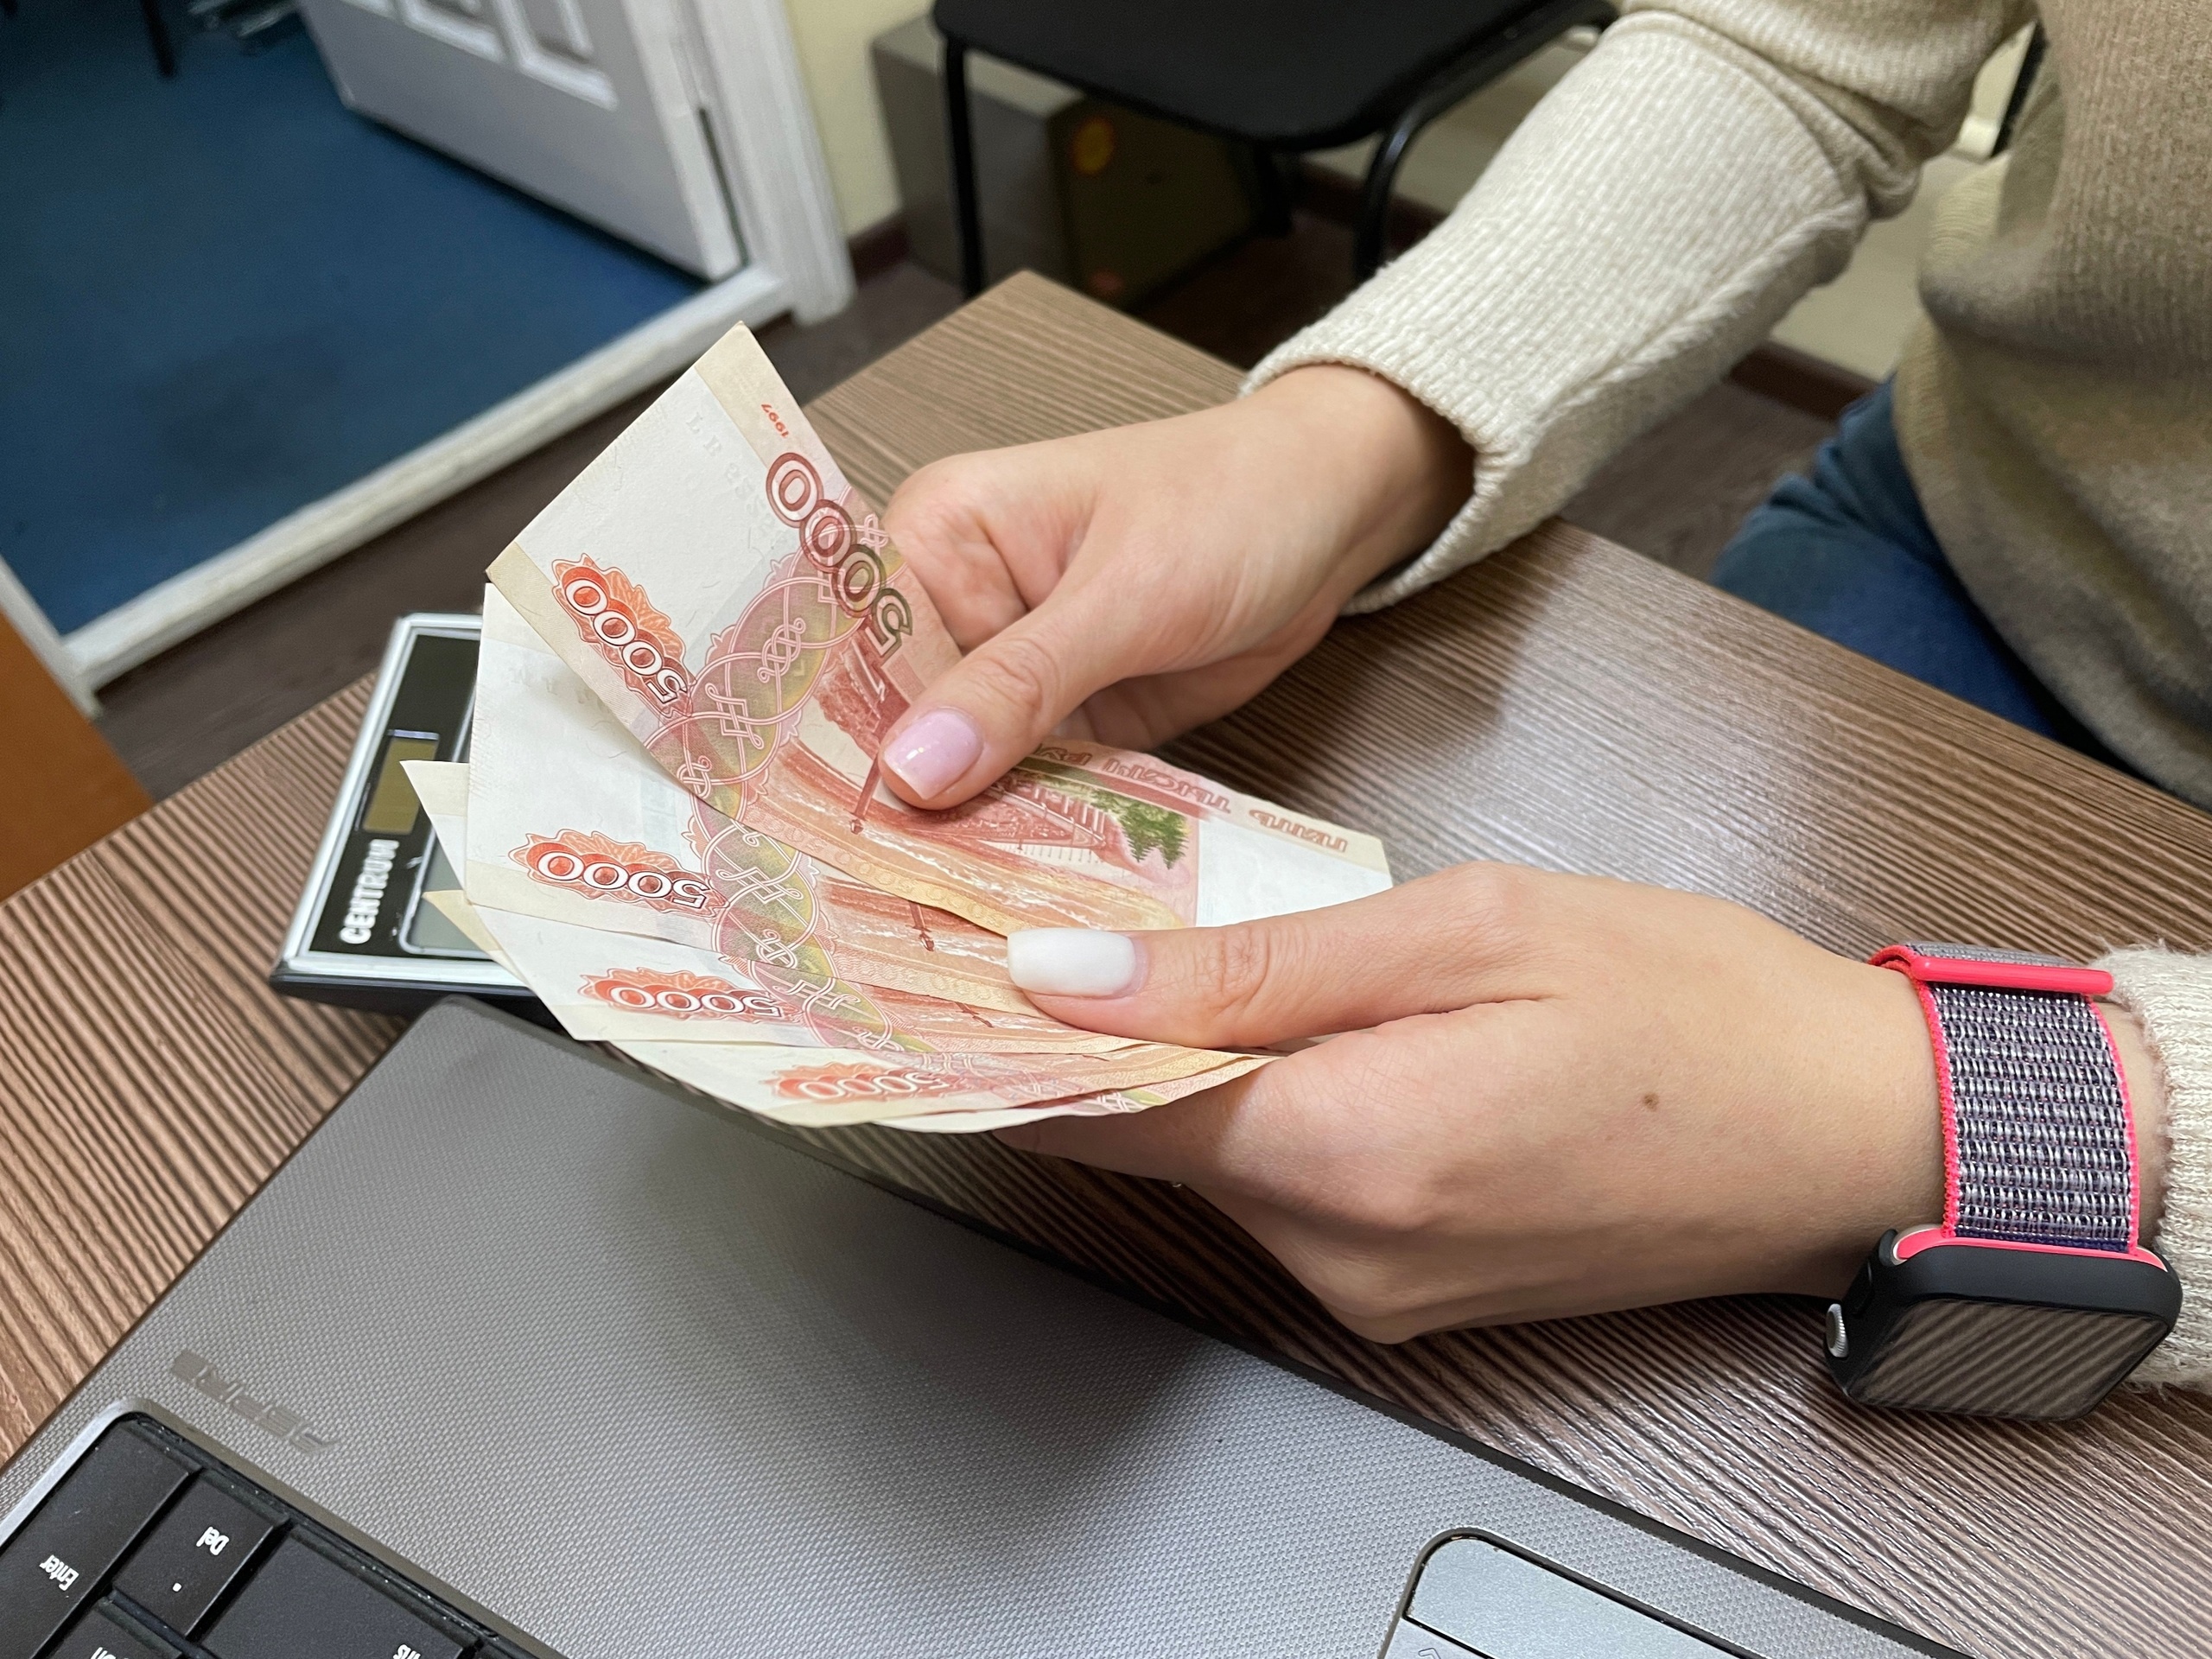 Два ухтинца отдали мошенникам более 1,6 миллионов рублей